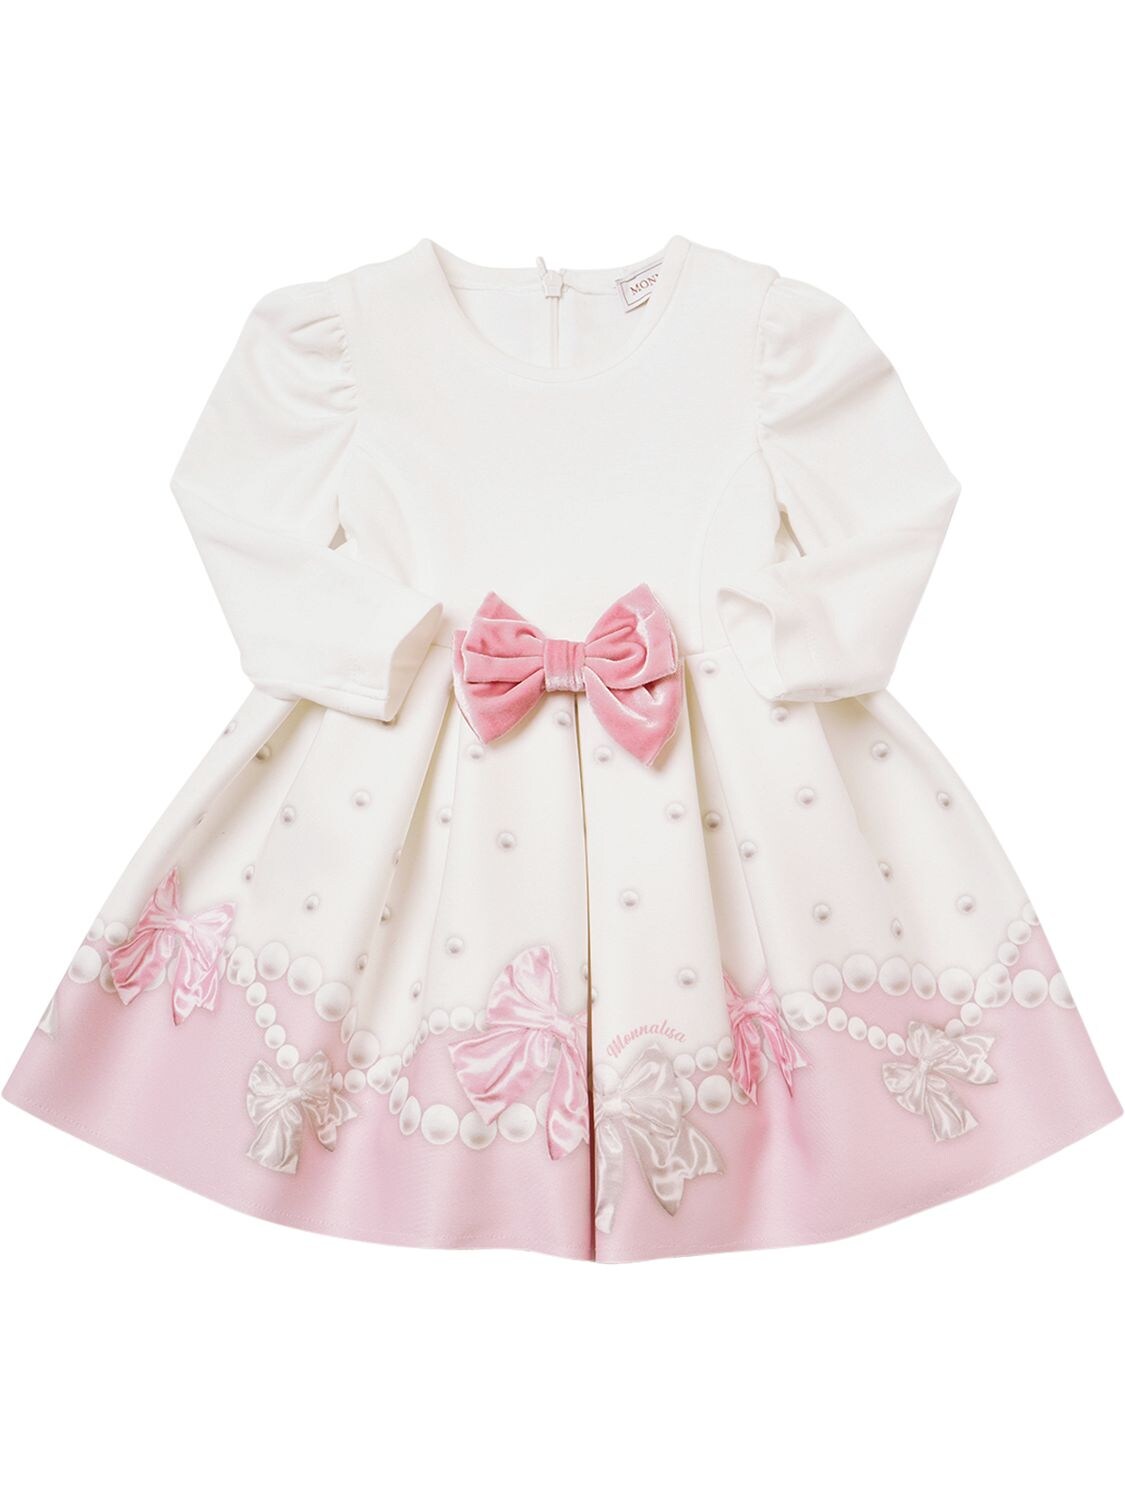 Monnalisa Kids' 蝴蝶结装饰印花punto Milano连衣裙 In White,pink